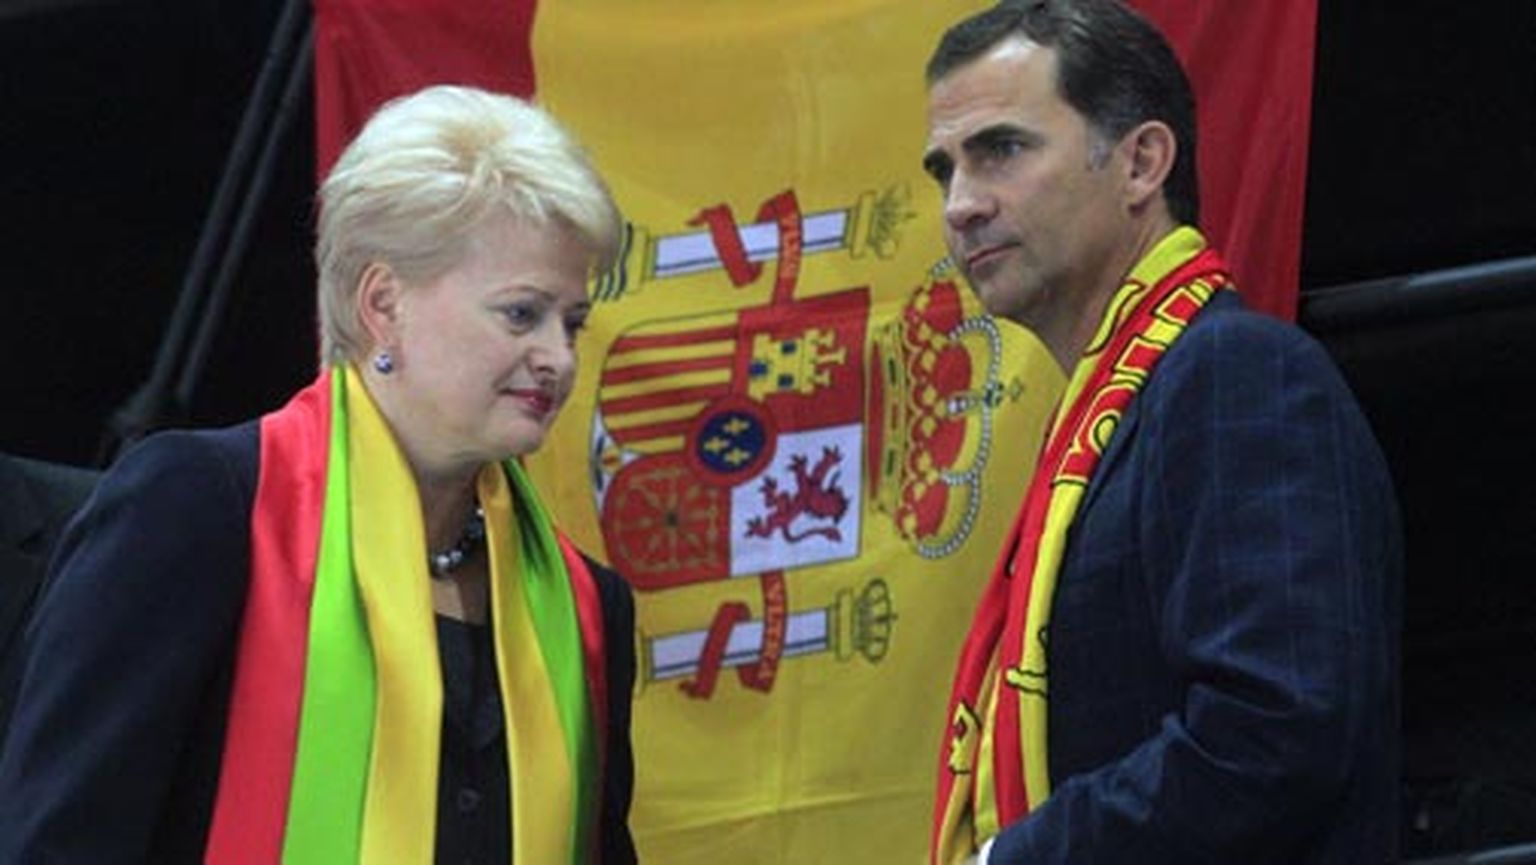 Daļa Grībauskaite kopā ar Spānijas princi Felipi Eiropas basketbola čempionāta fināla spēlē